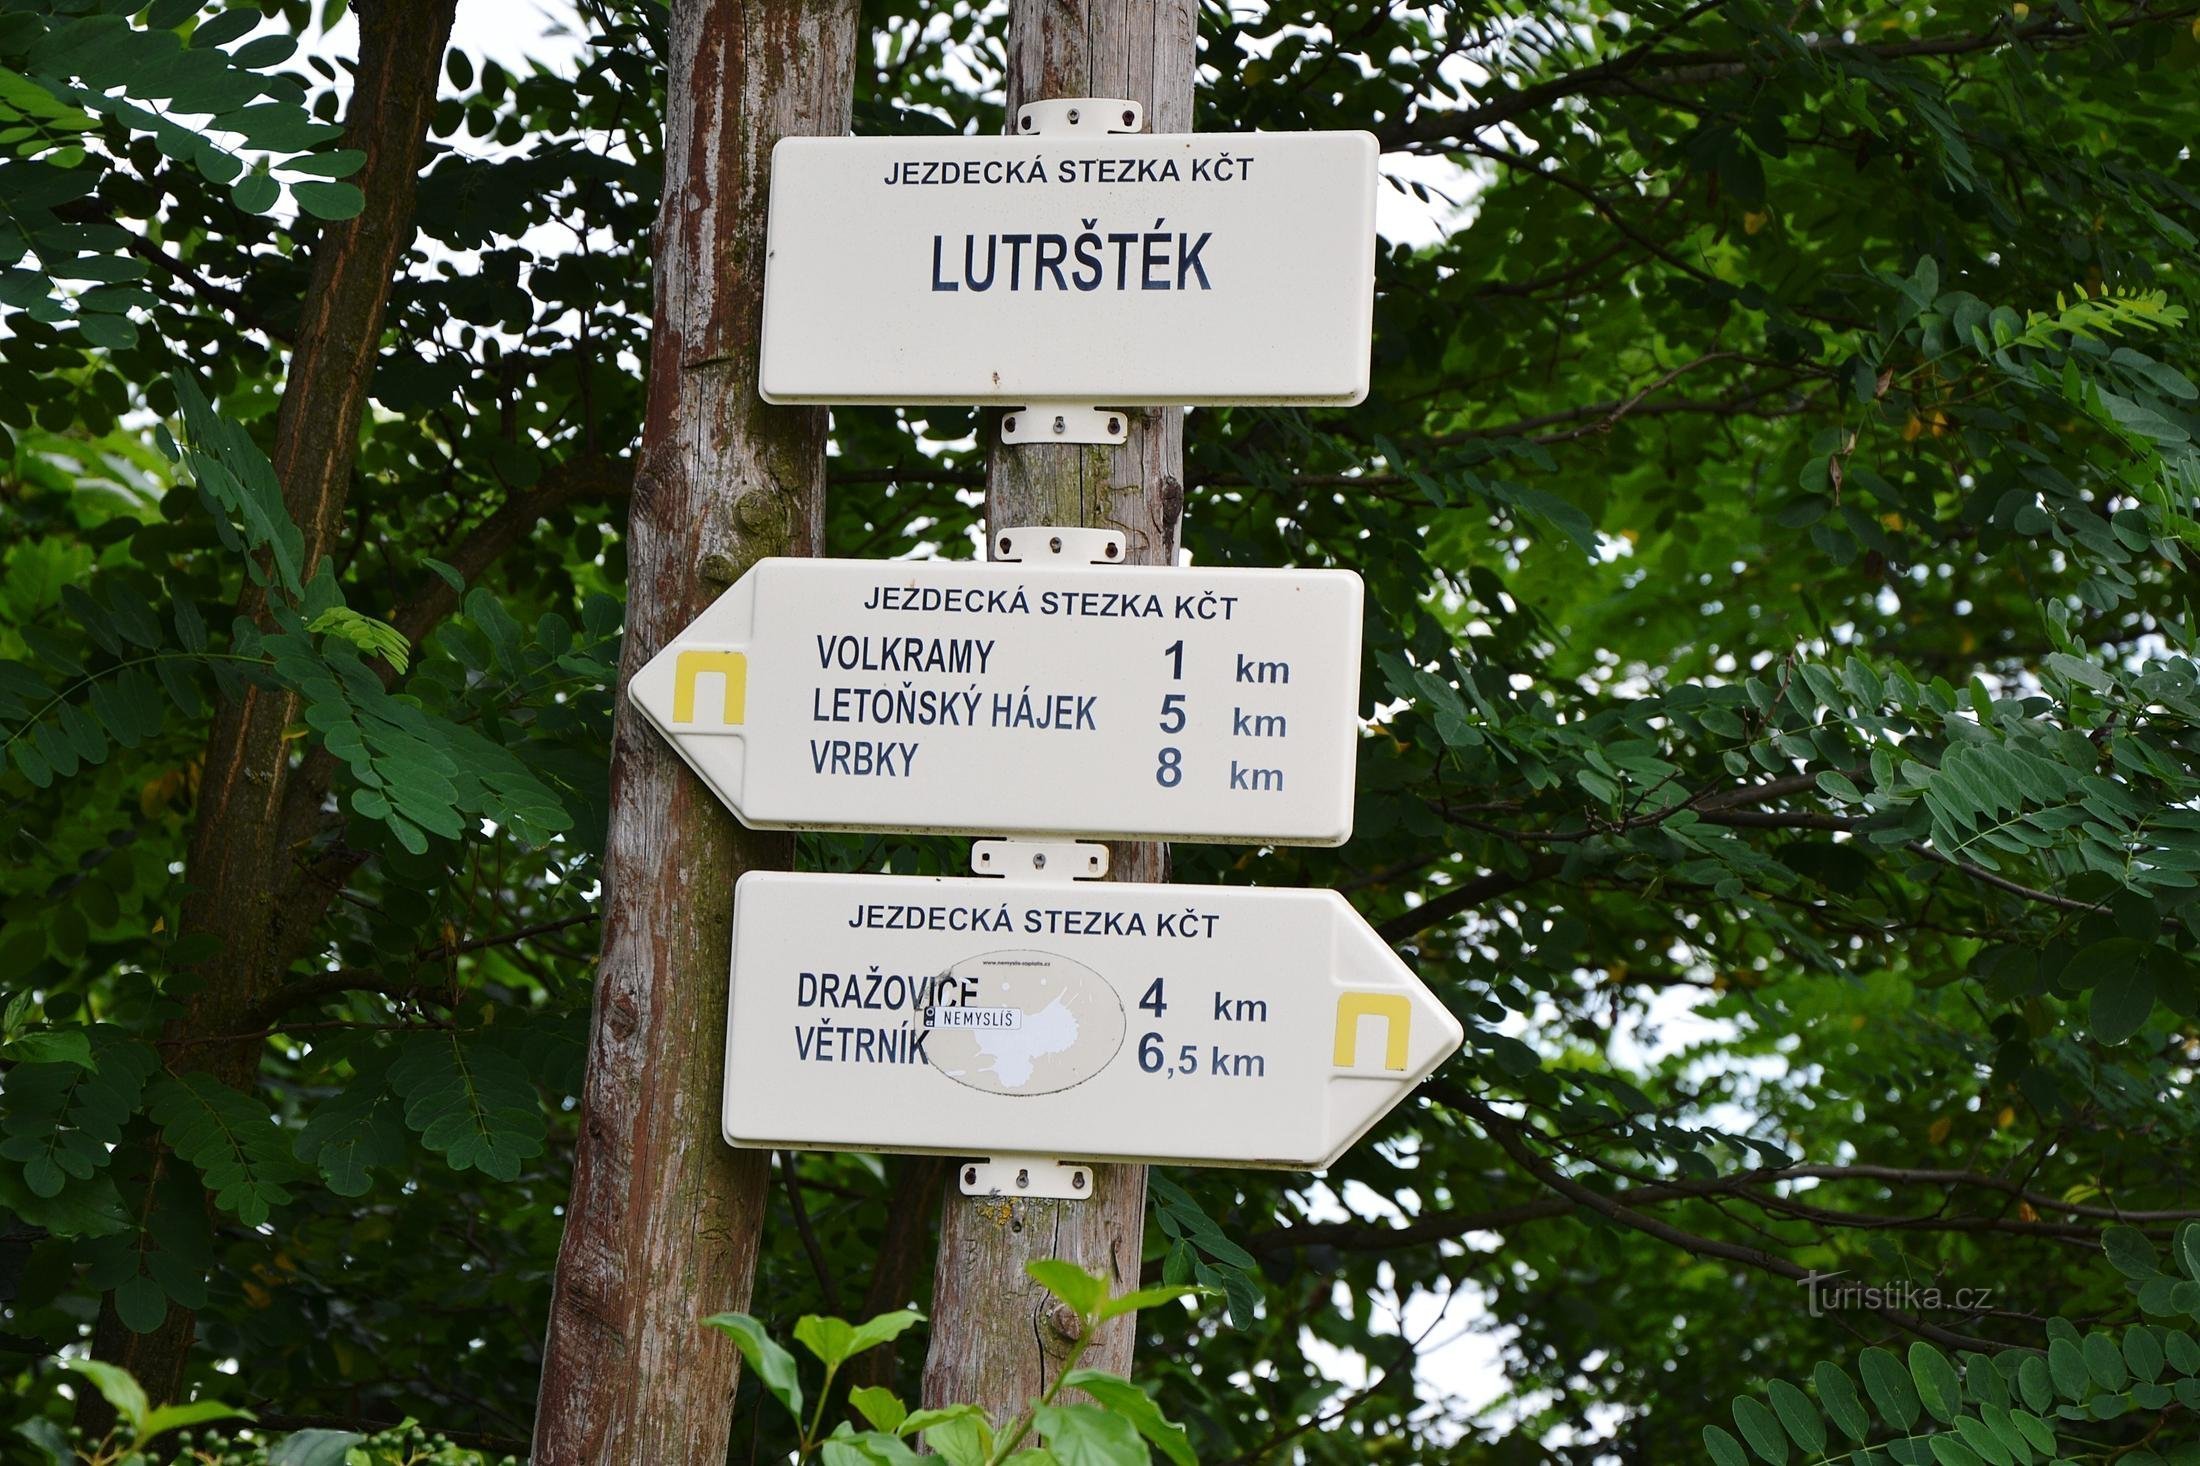 cartel cerca de Lutrštek